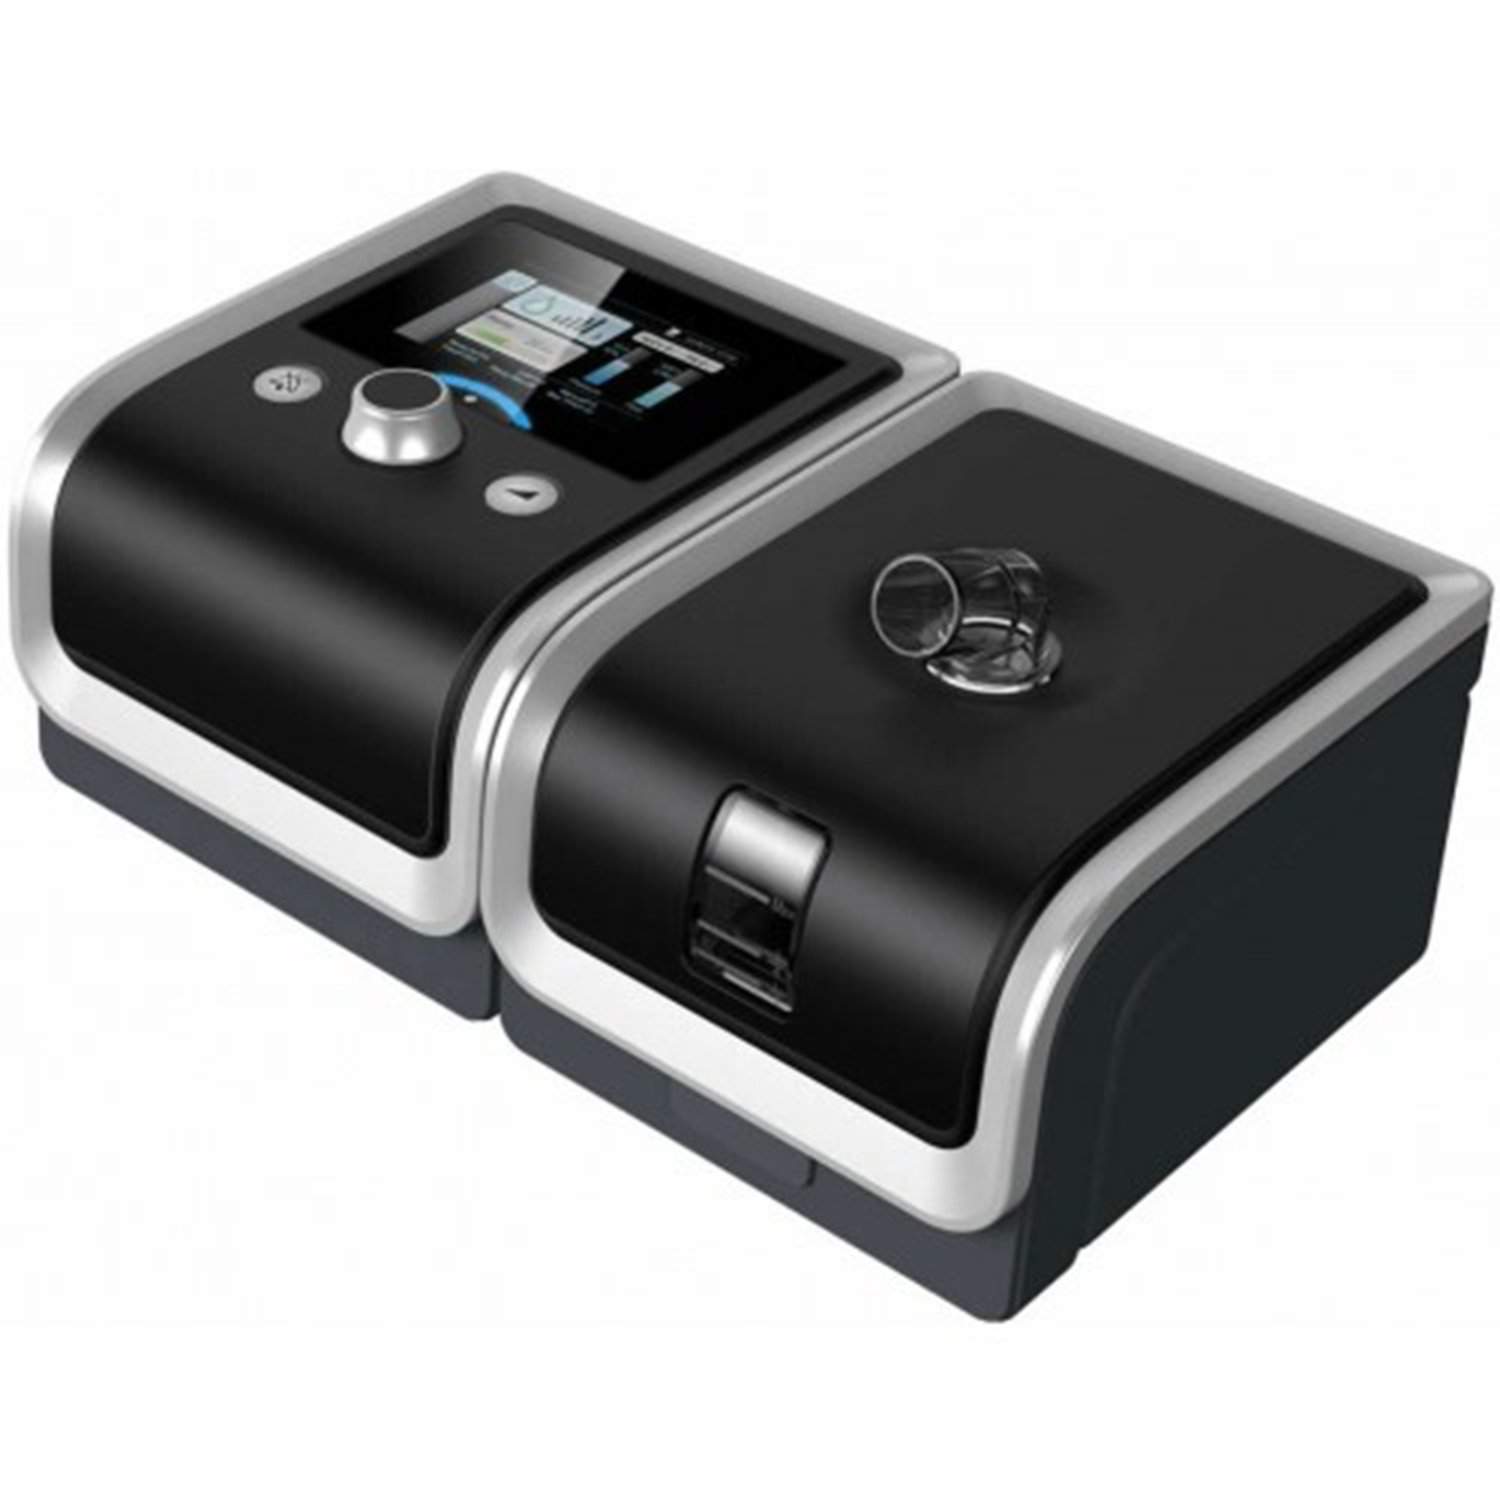 30 Cm H2O Auto CPAP Ventilator Machine